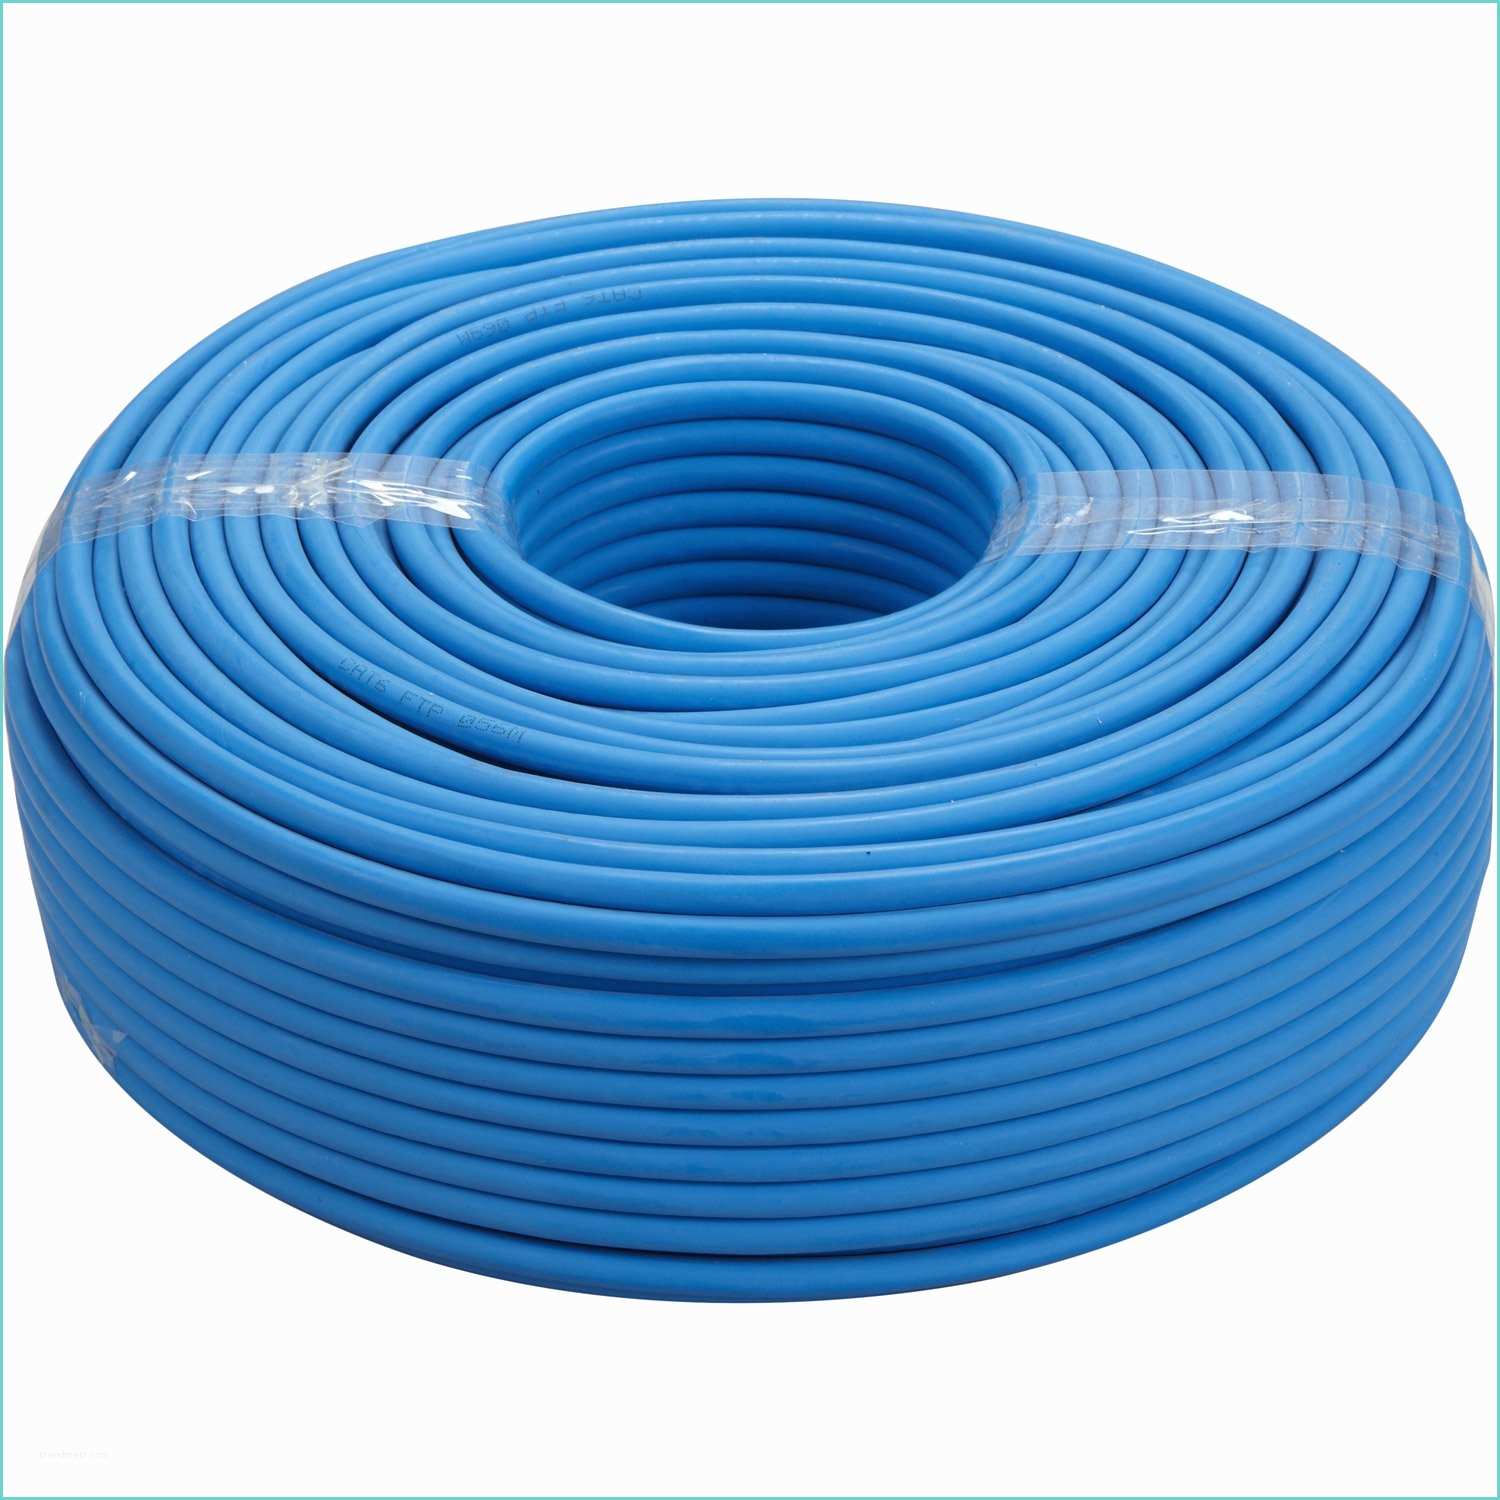 Cable Electrique Tissu Leroy Merlin Câble électrique Rj45 Bleu L 100 M